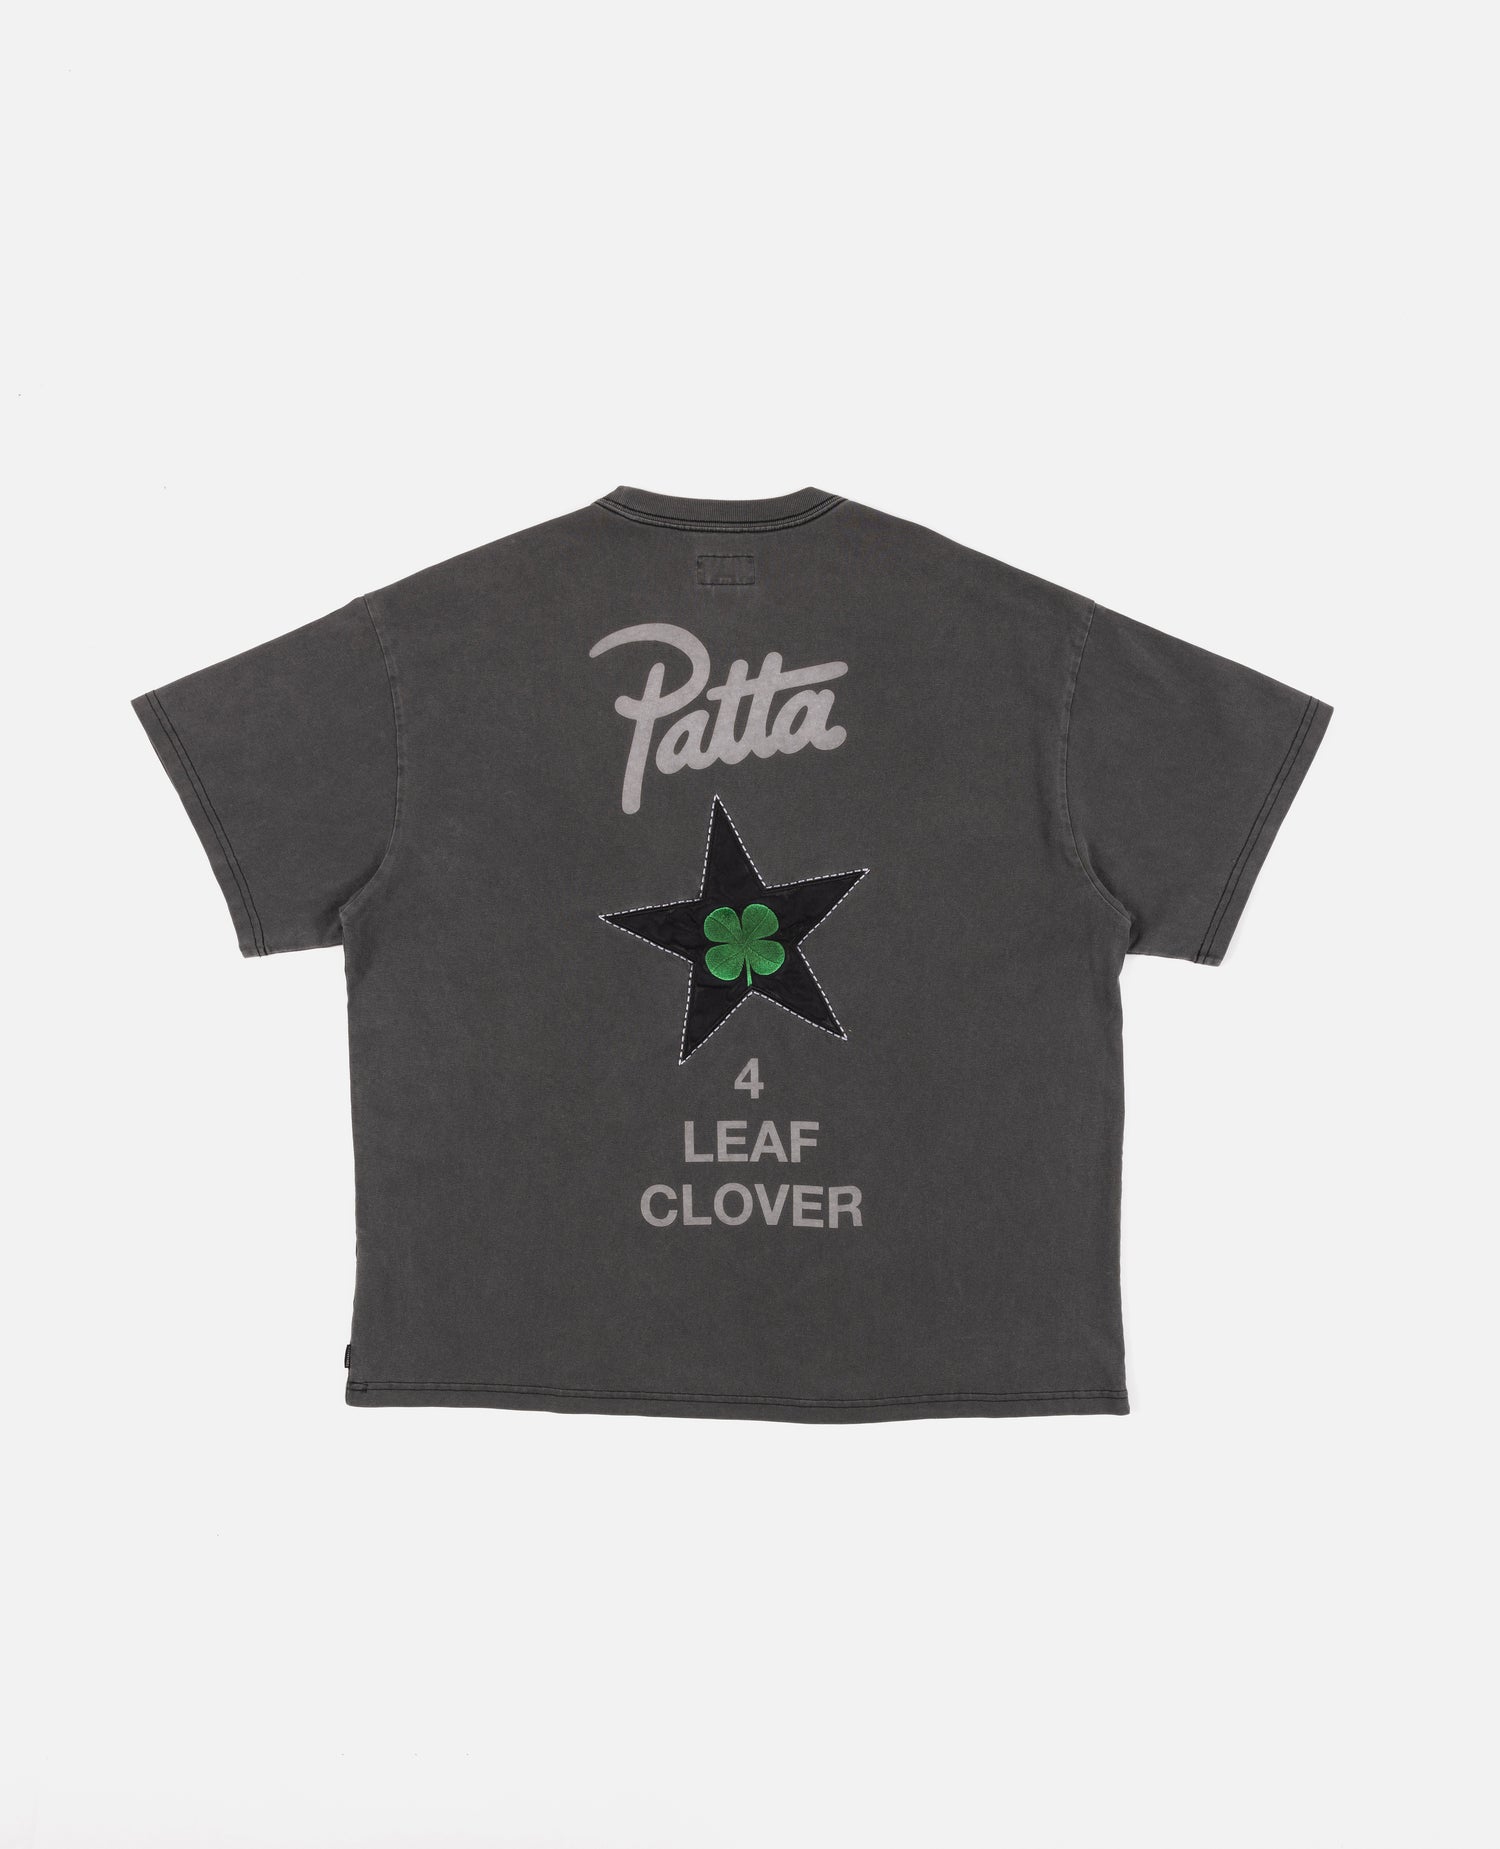 Patta x Converse 4 Leaf Clover